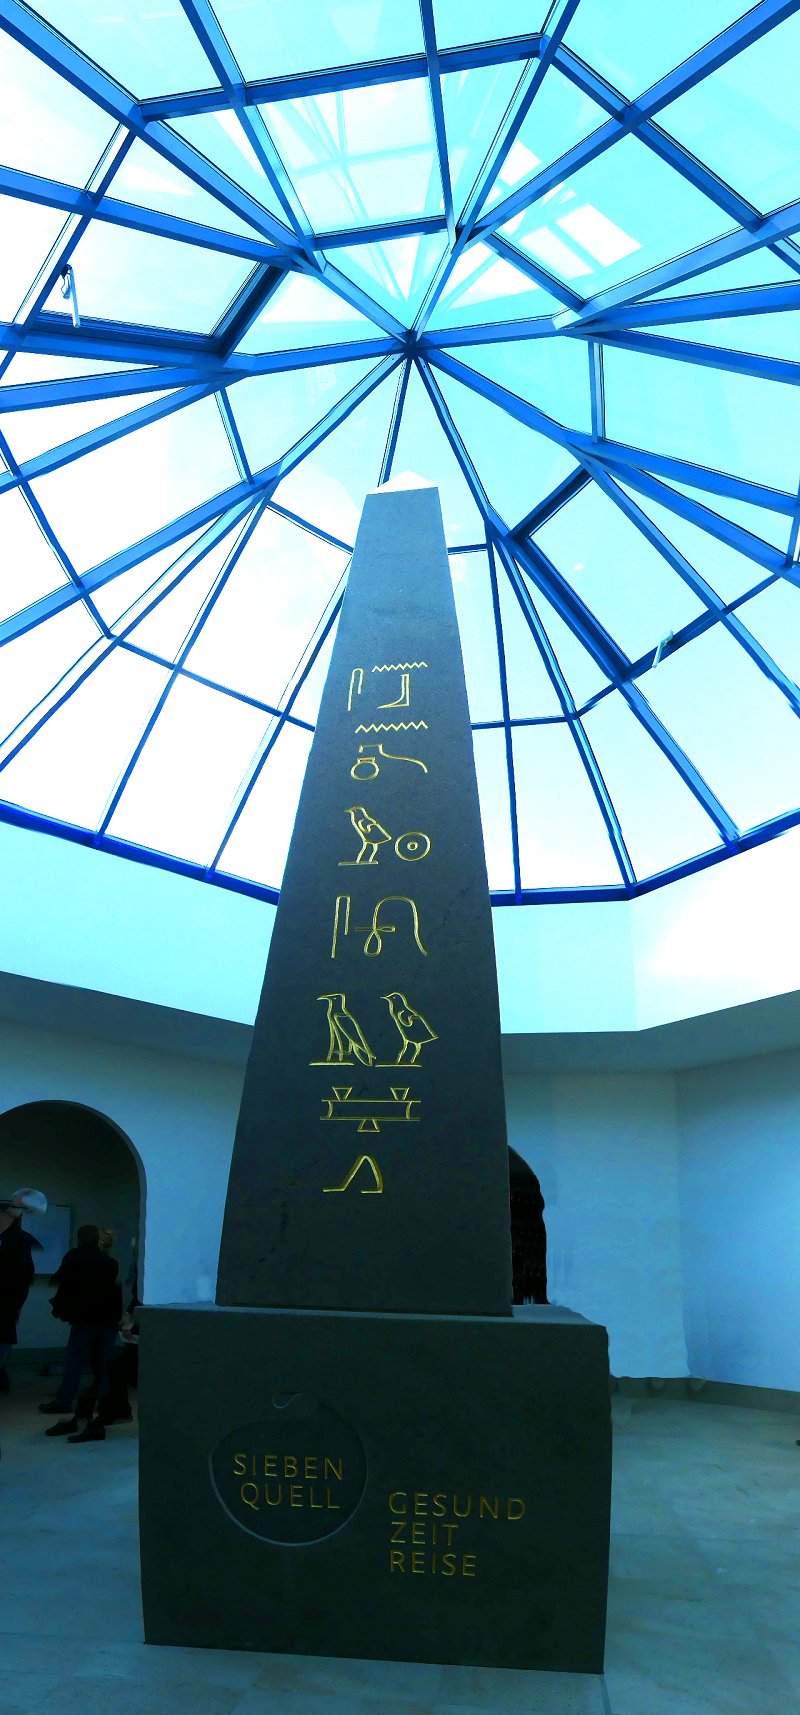 Die ägyptische Seite des Obelisken in der GesundZeitReise